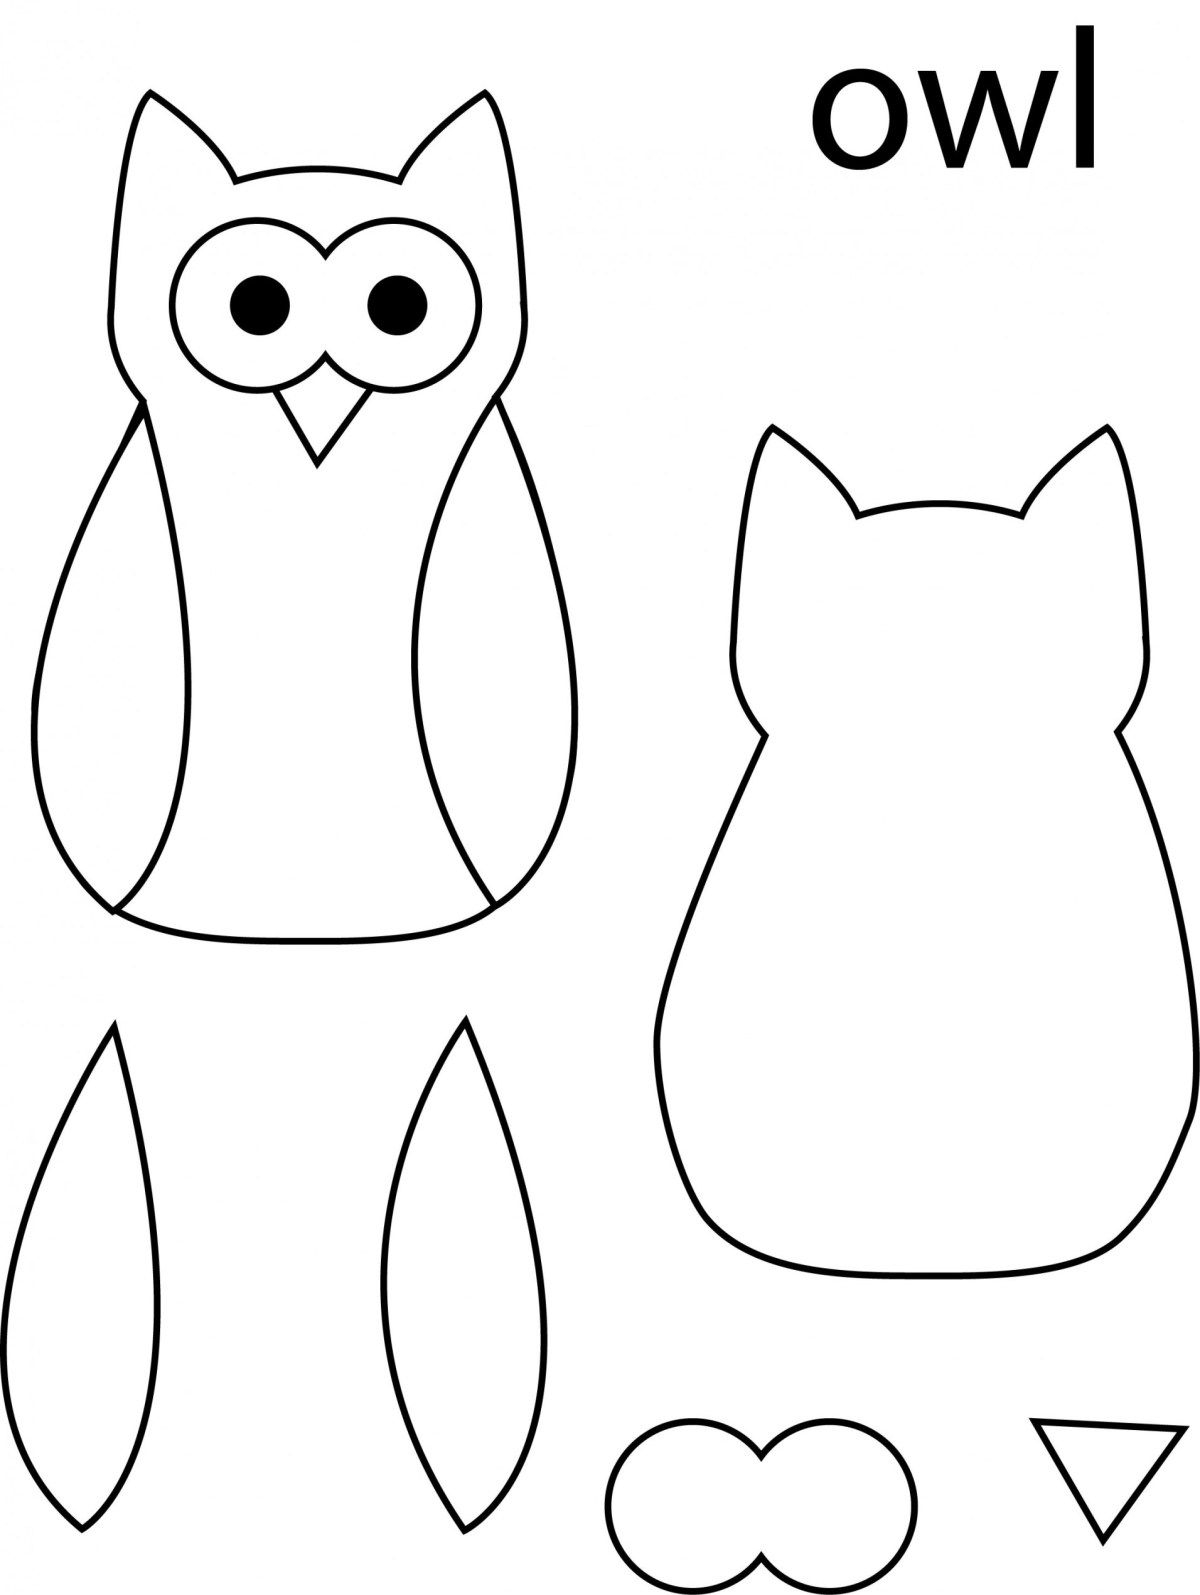 Owl Template Owl Templates Owl Crafts Bird Template